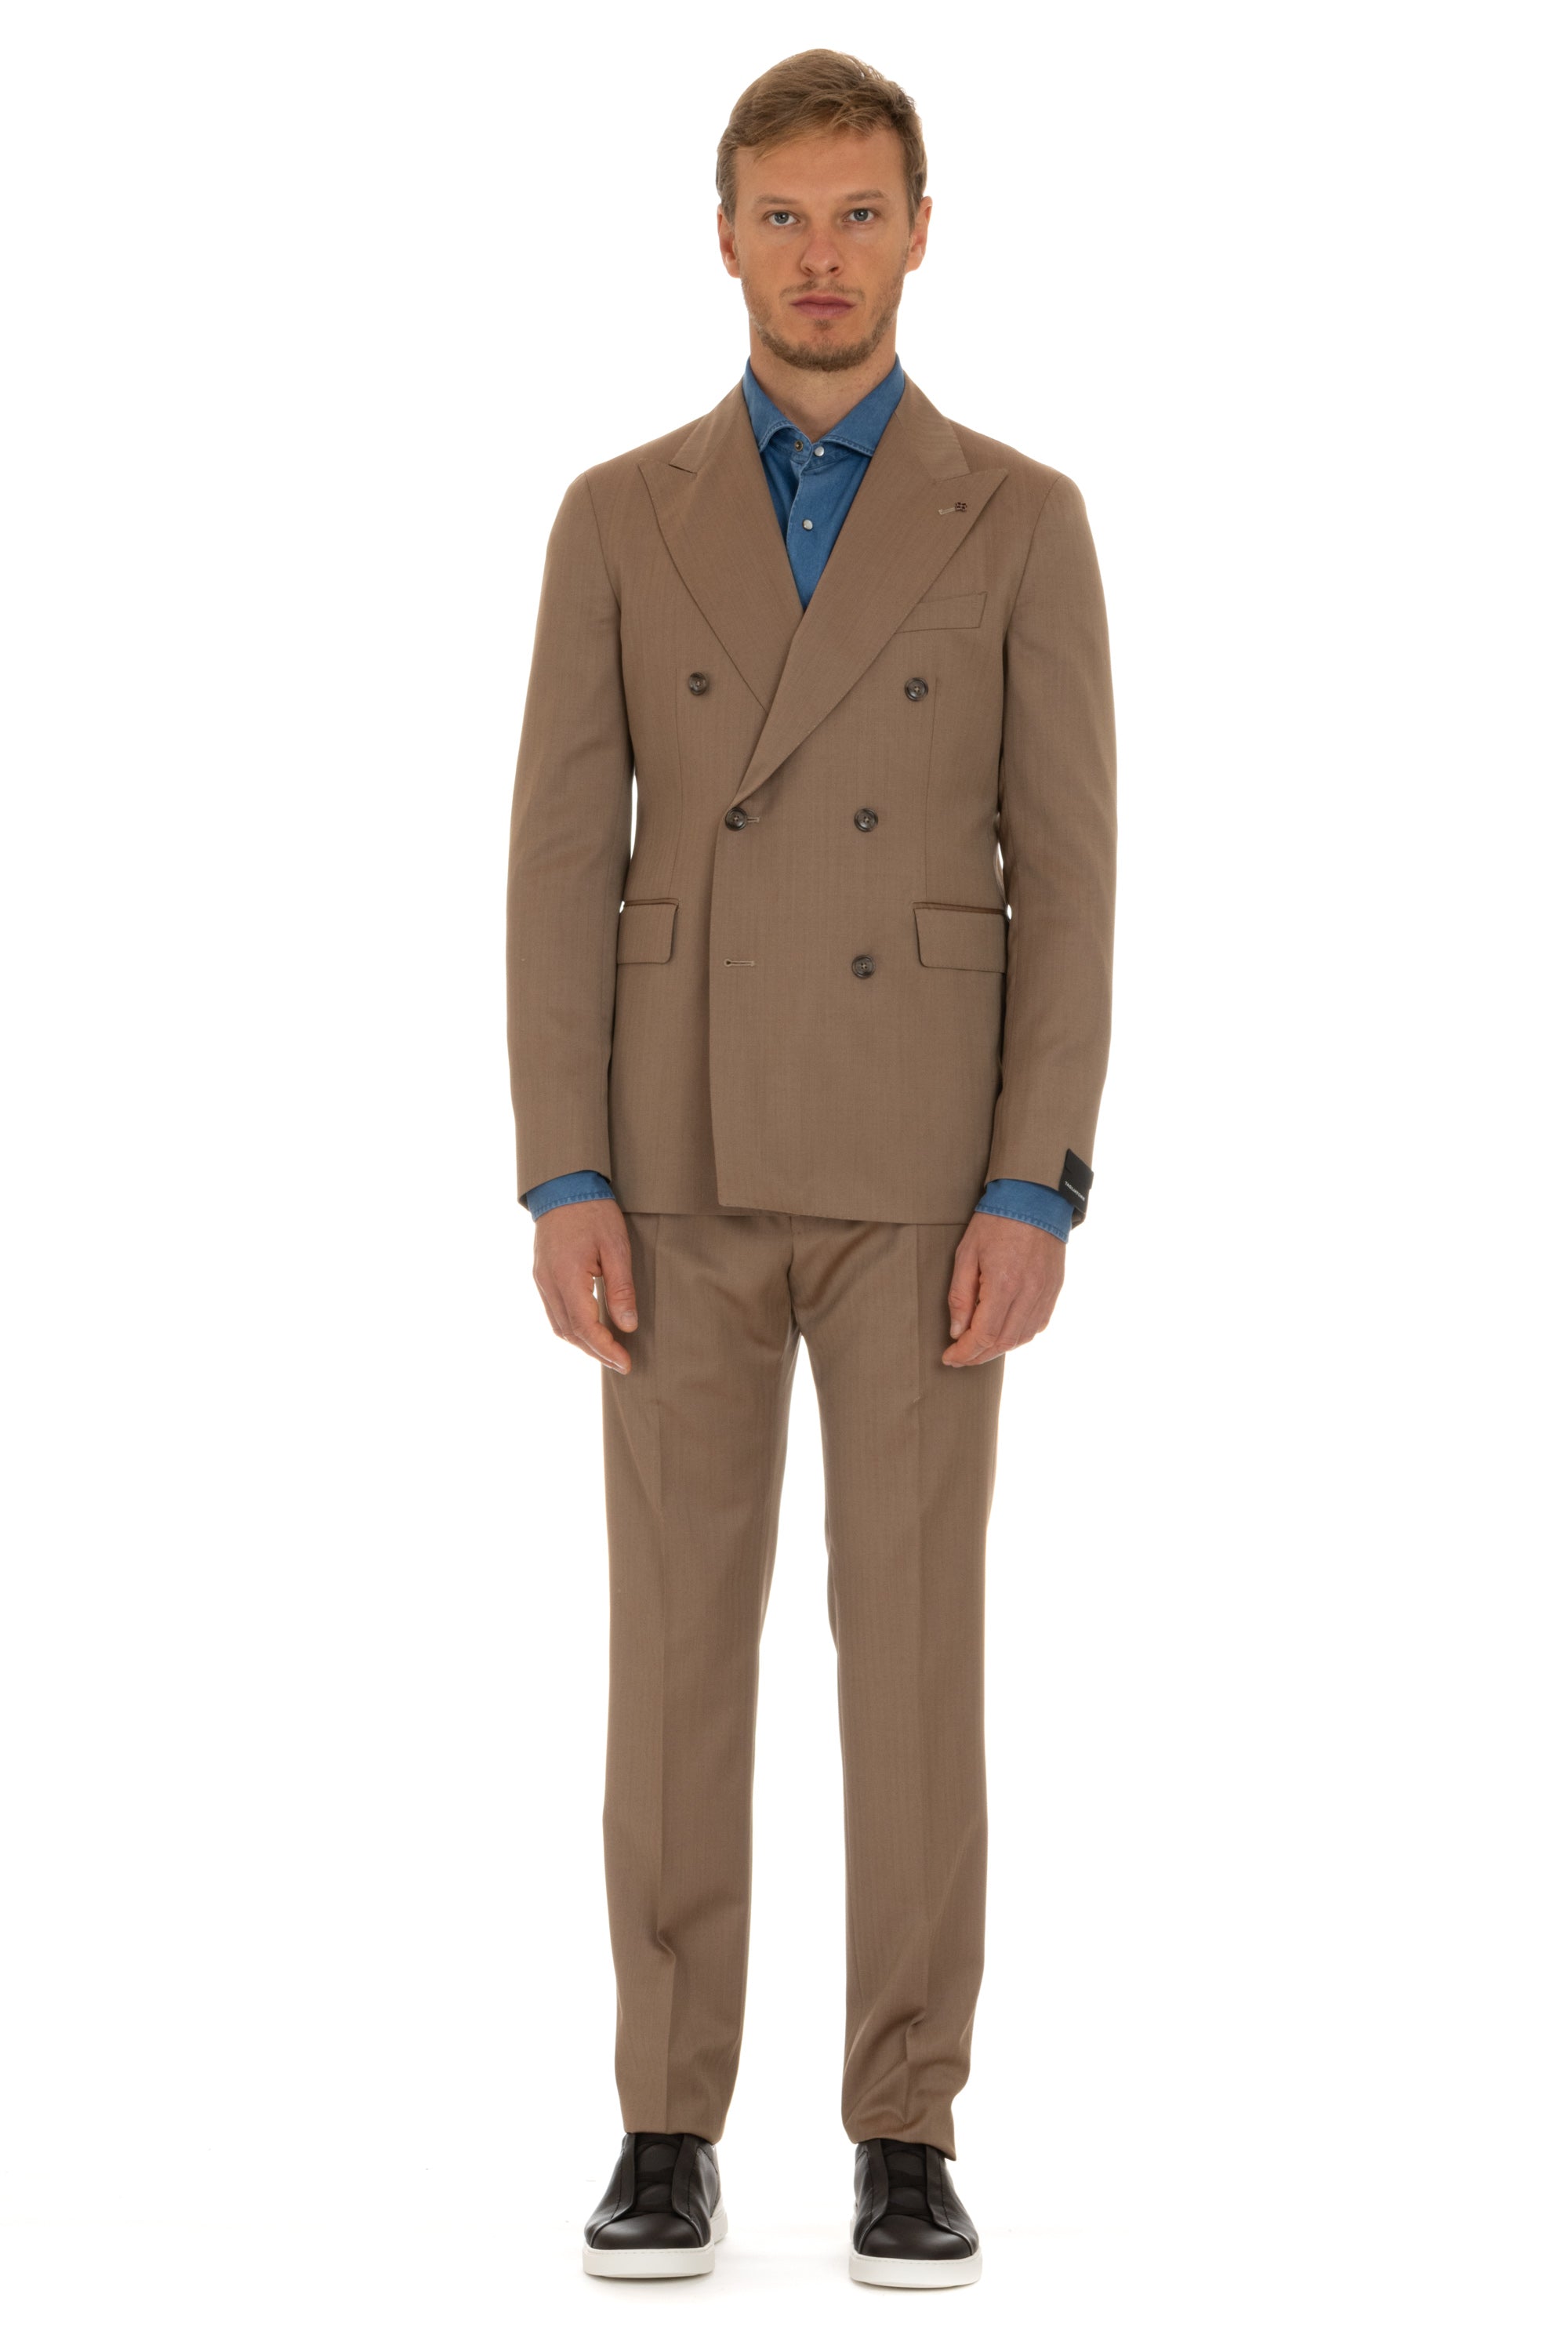 Solaro suit in super 130's wool mod. Vesuvius